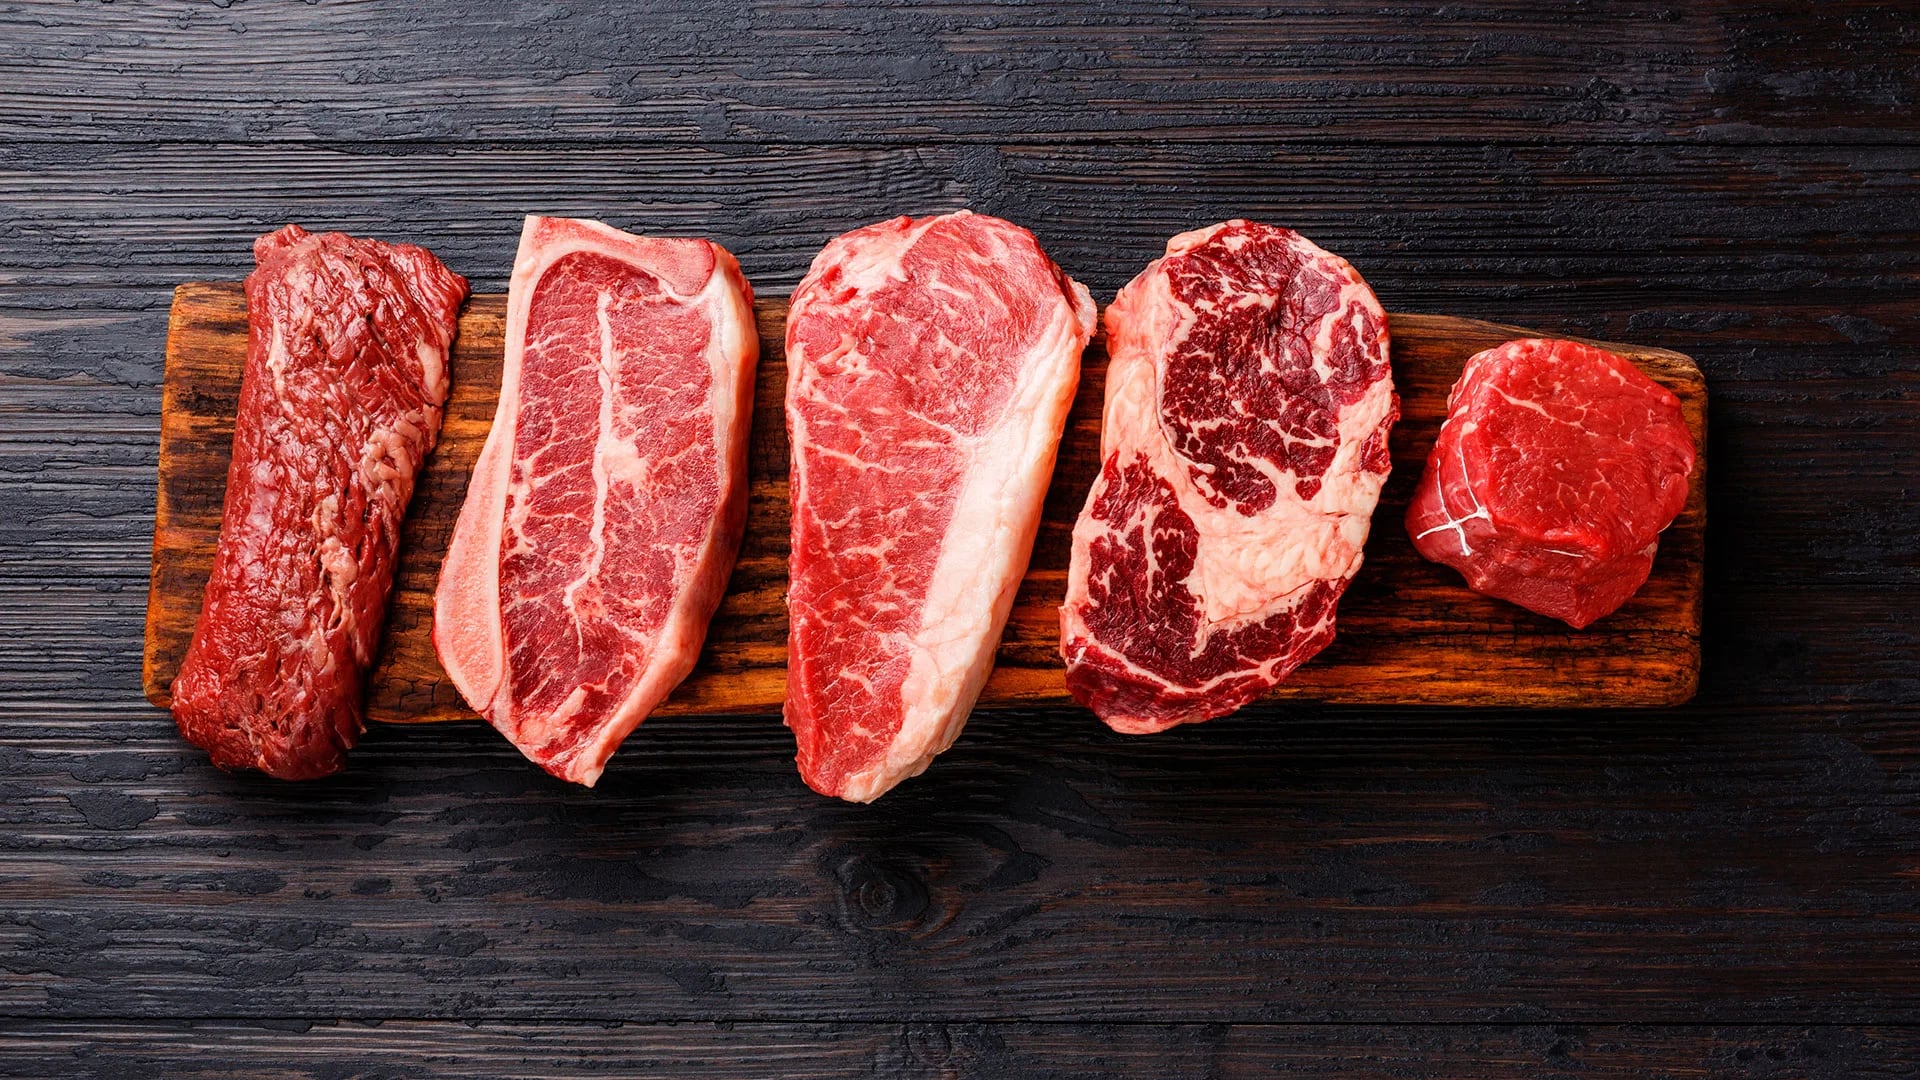 La OMS catalogó a las carnes rojas como probablemente cancerígenas (Fick)